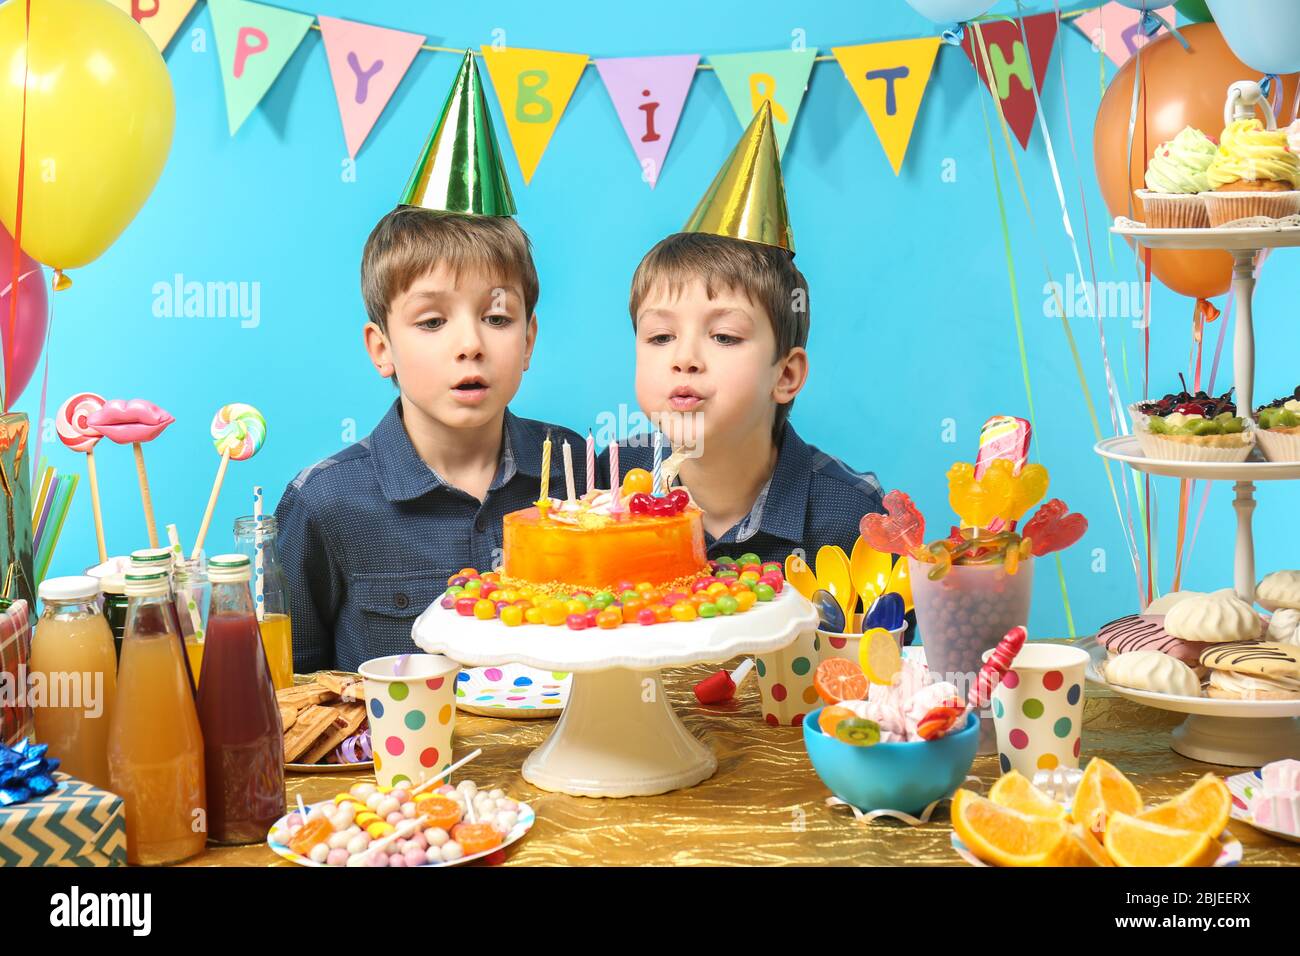 Order Twins Birthday Cake Online- FlavoursGuru